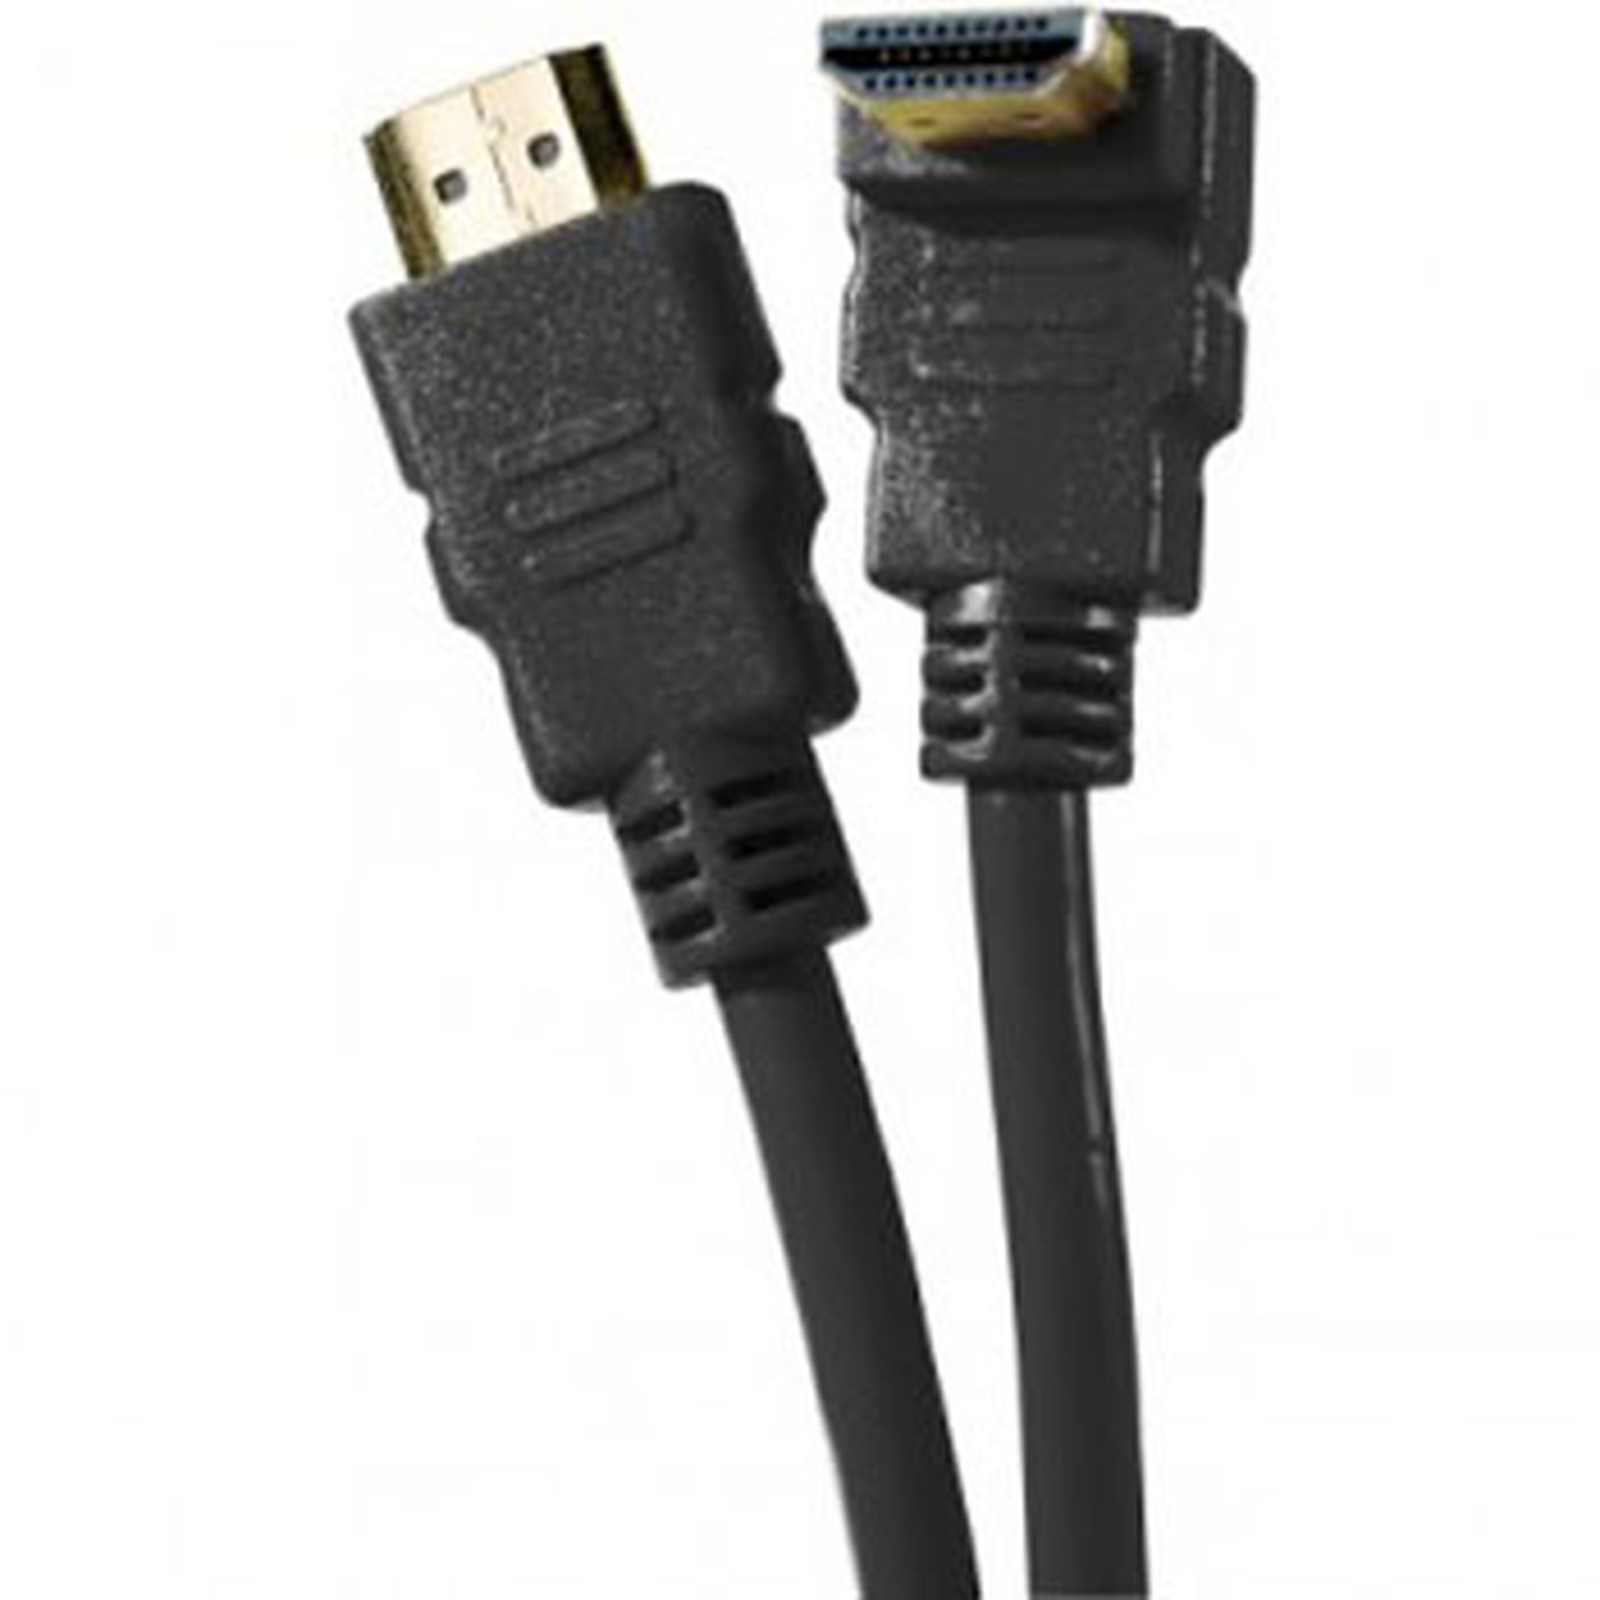 Cable HDMI 1.4 Ethernet Channel Coude male/male Noir - (2 mètres) - HDMI Generique